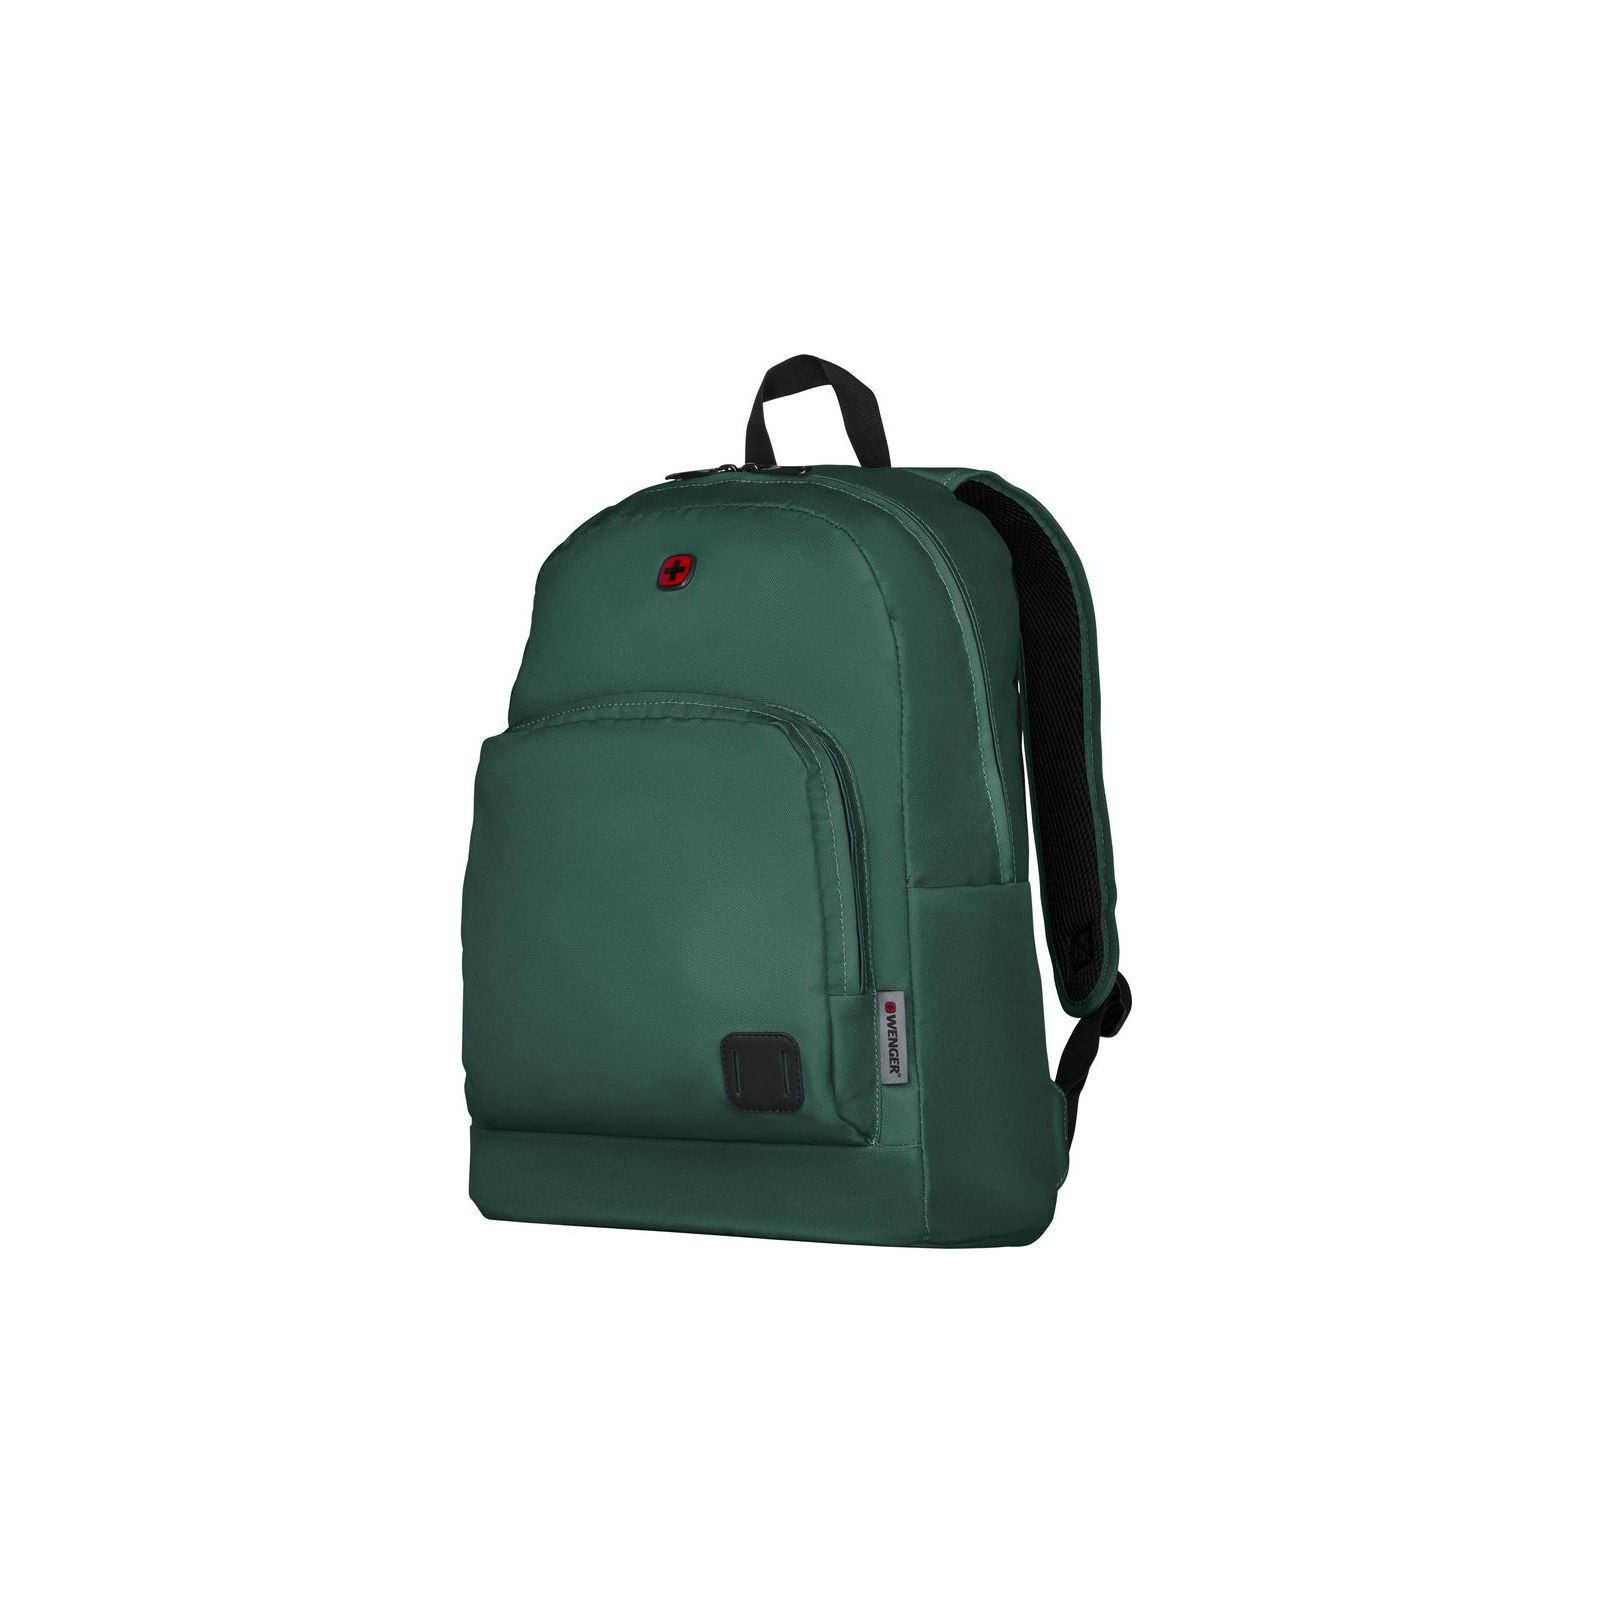 Рюкзак для ноутбука Wenger 16" Crango, Green (610197)